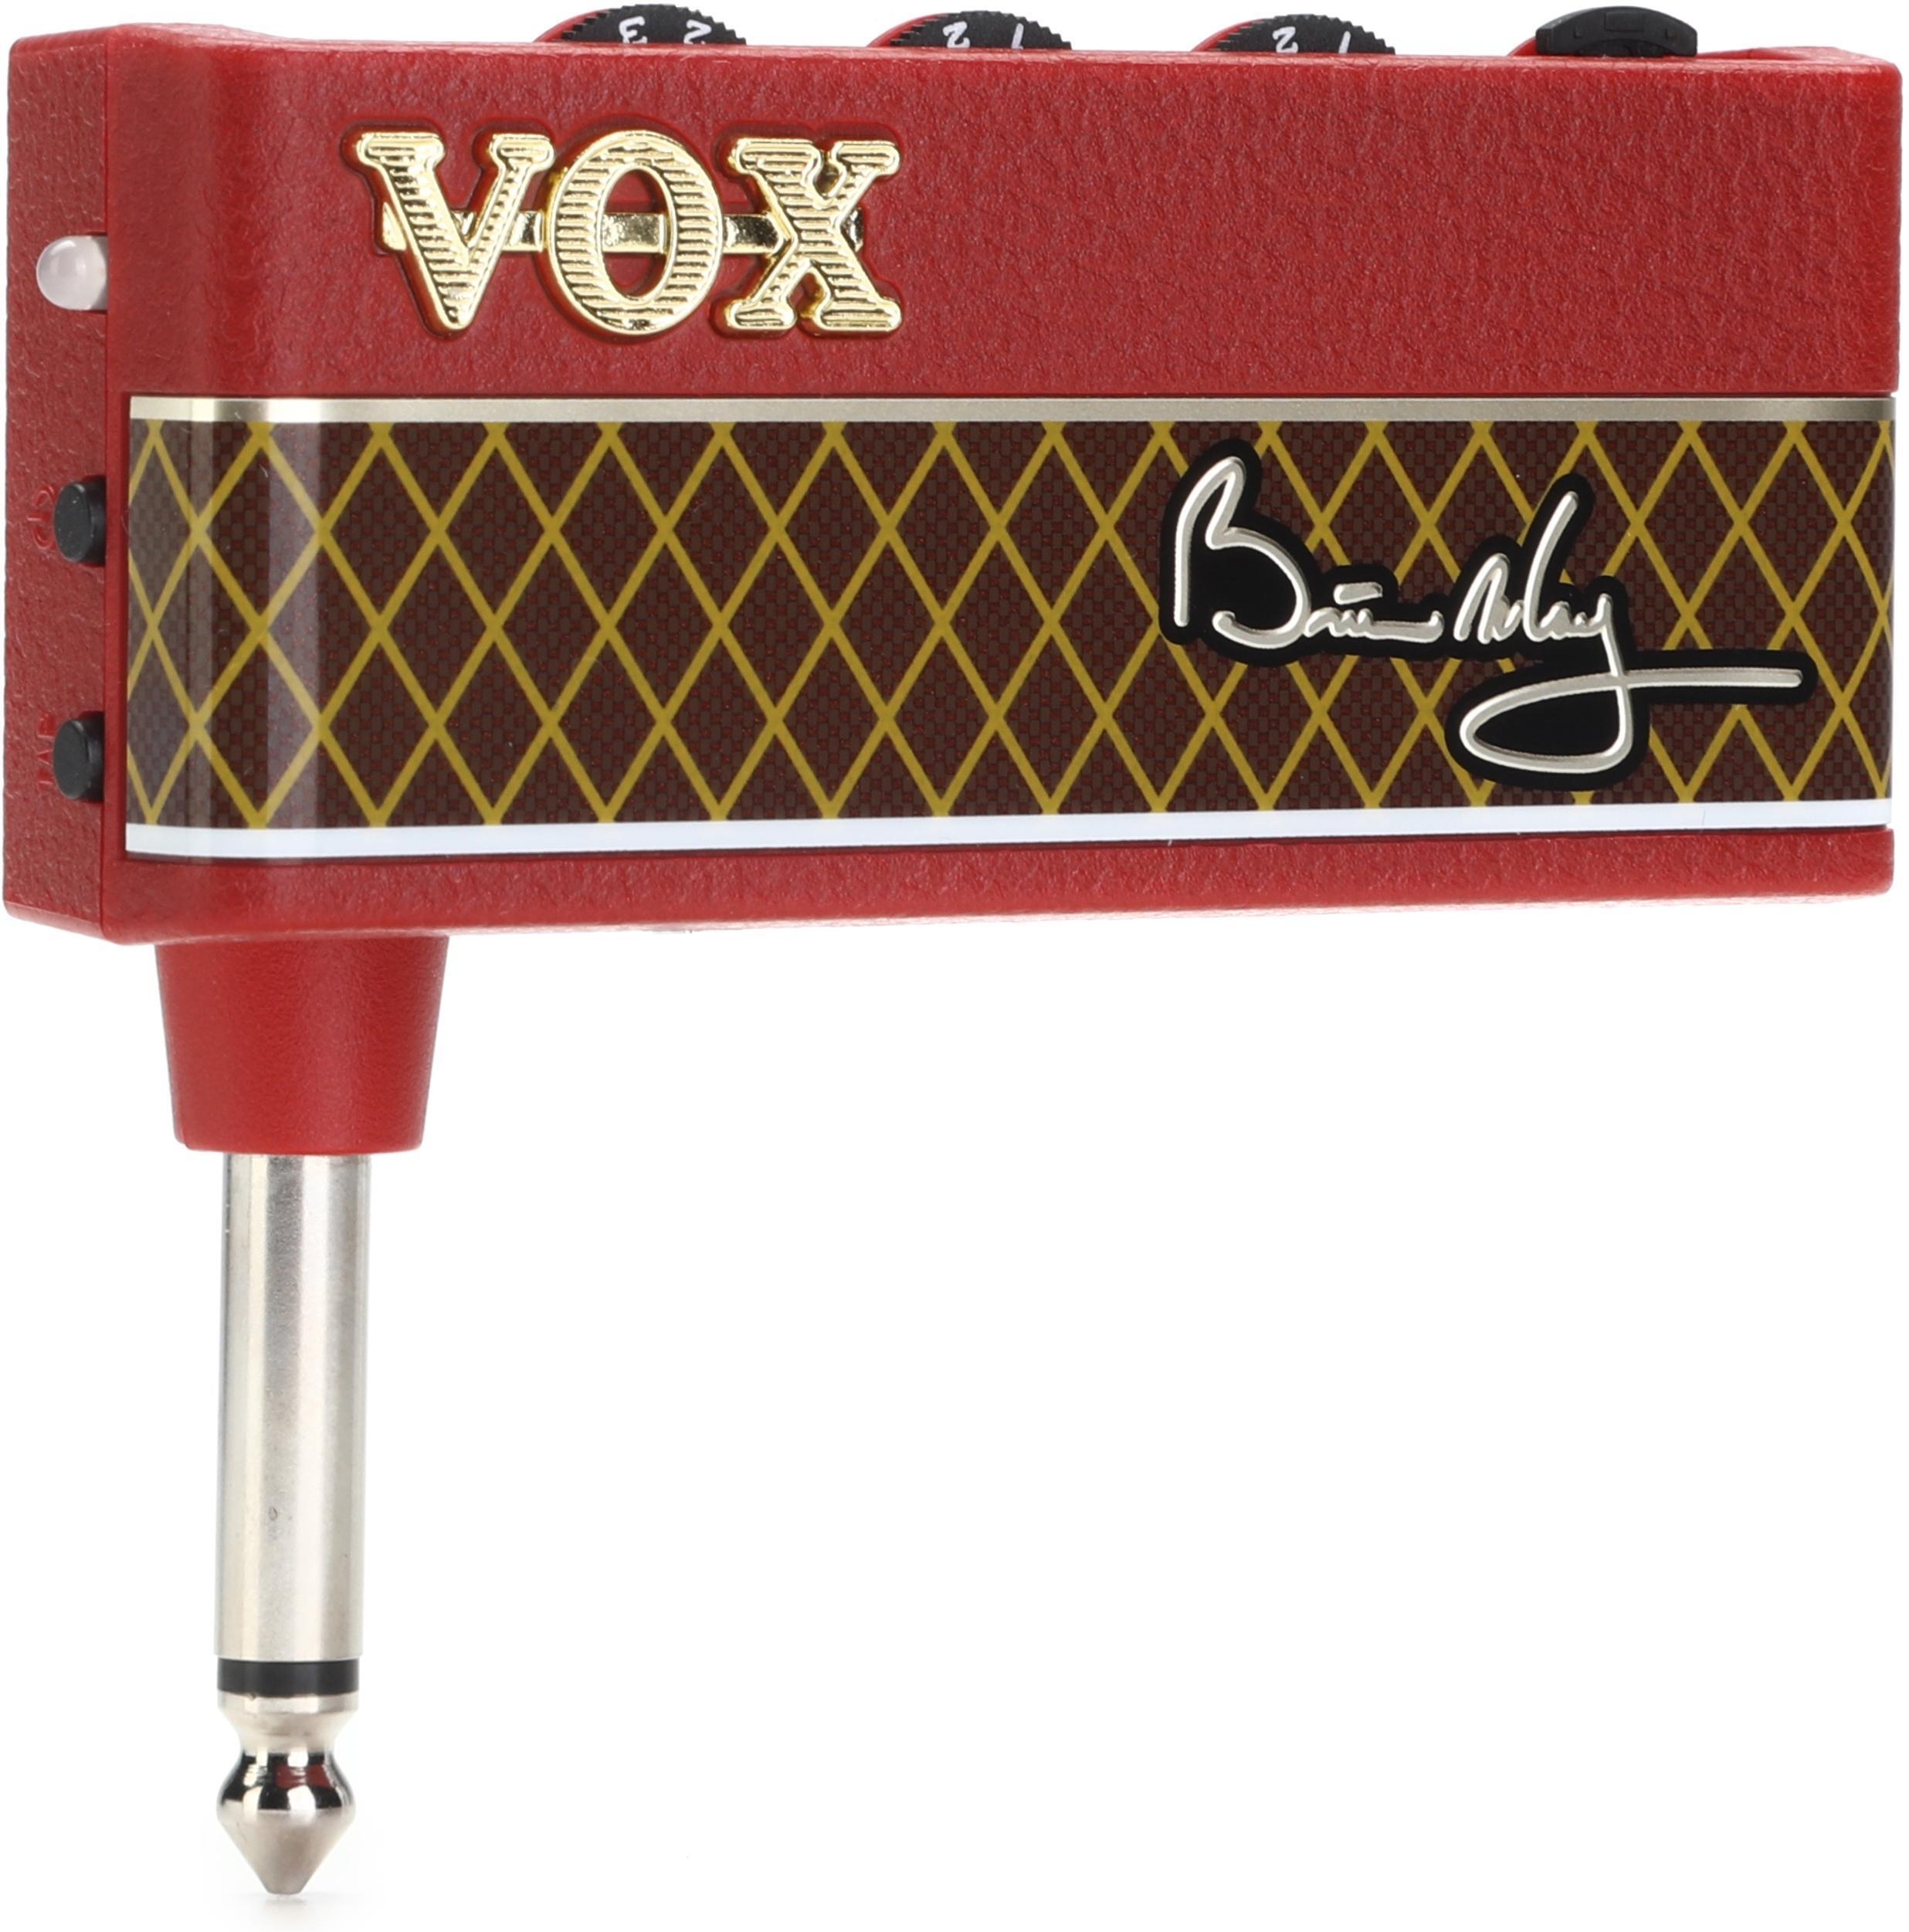 Bundled Item: Vox Brian May amPlug Headphone Guitar Amp